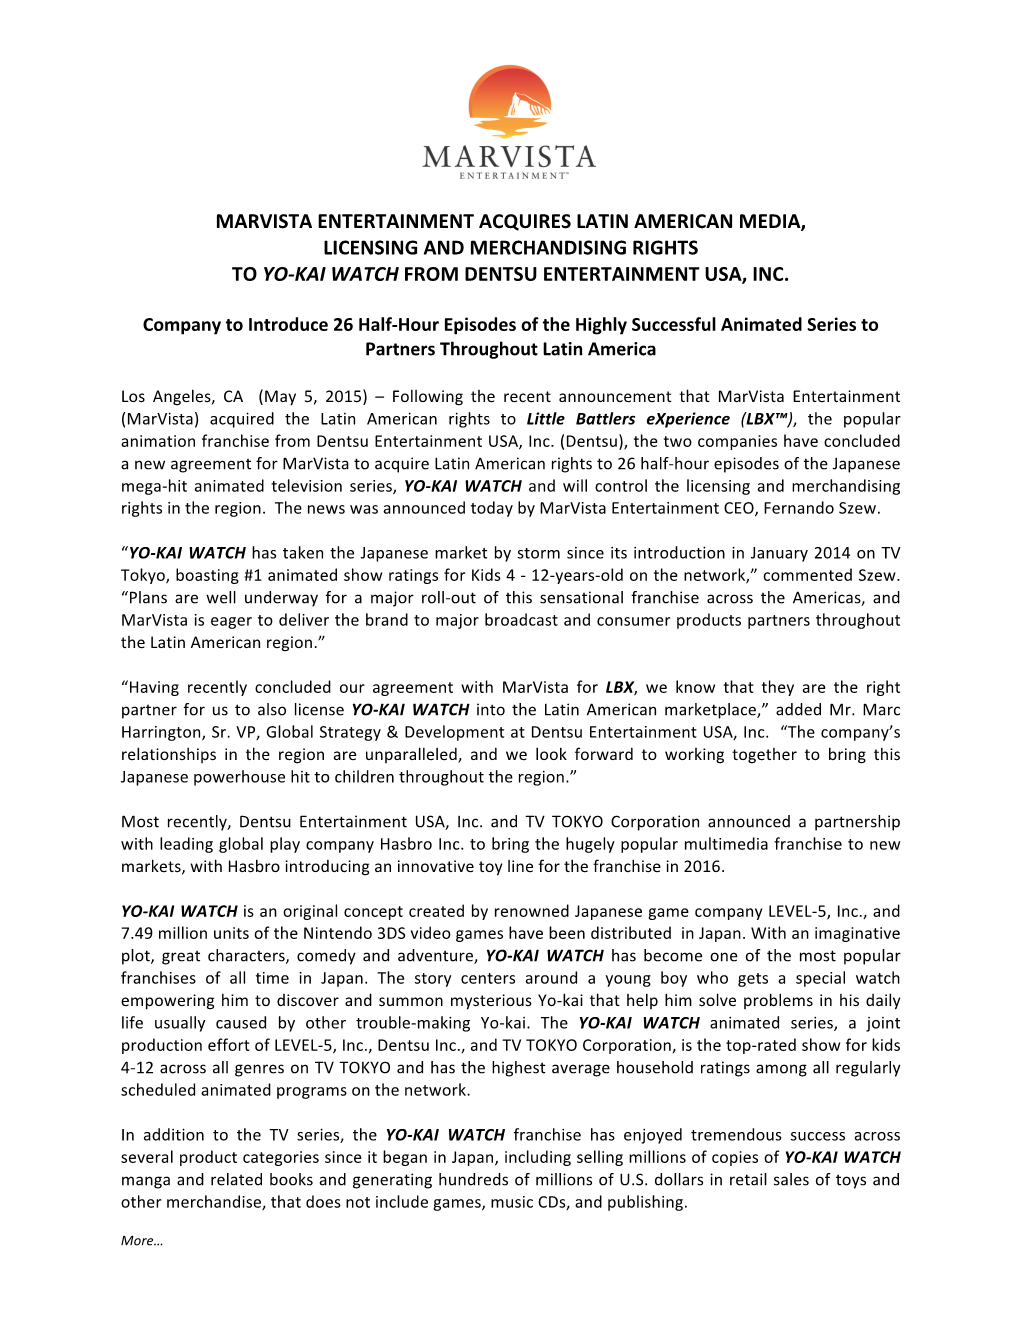 05/05/2015 Marvista Entertainment Acquires Latin American Media